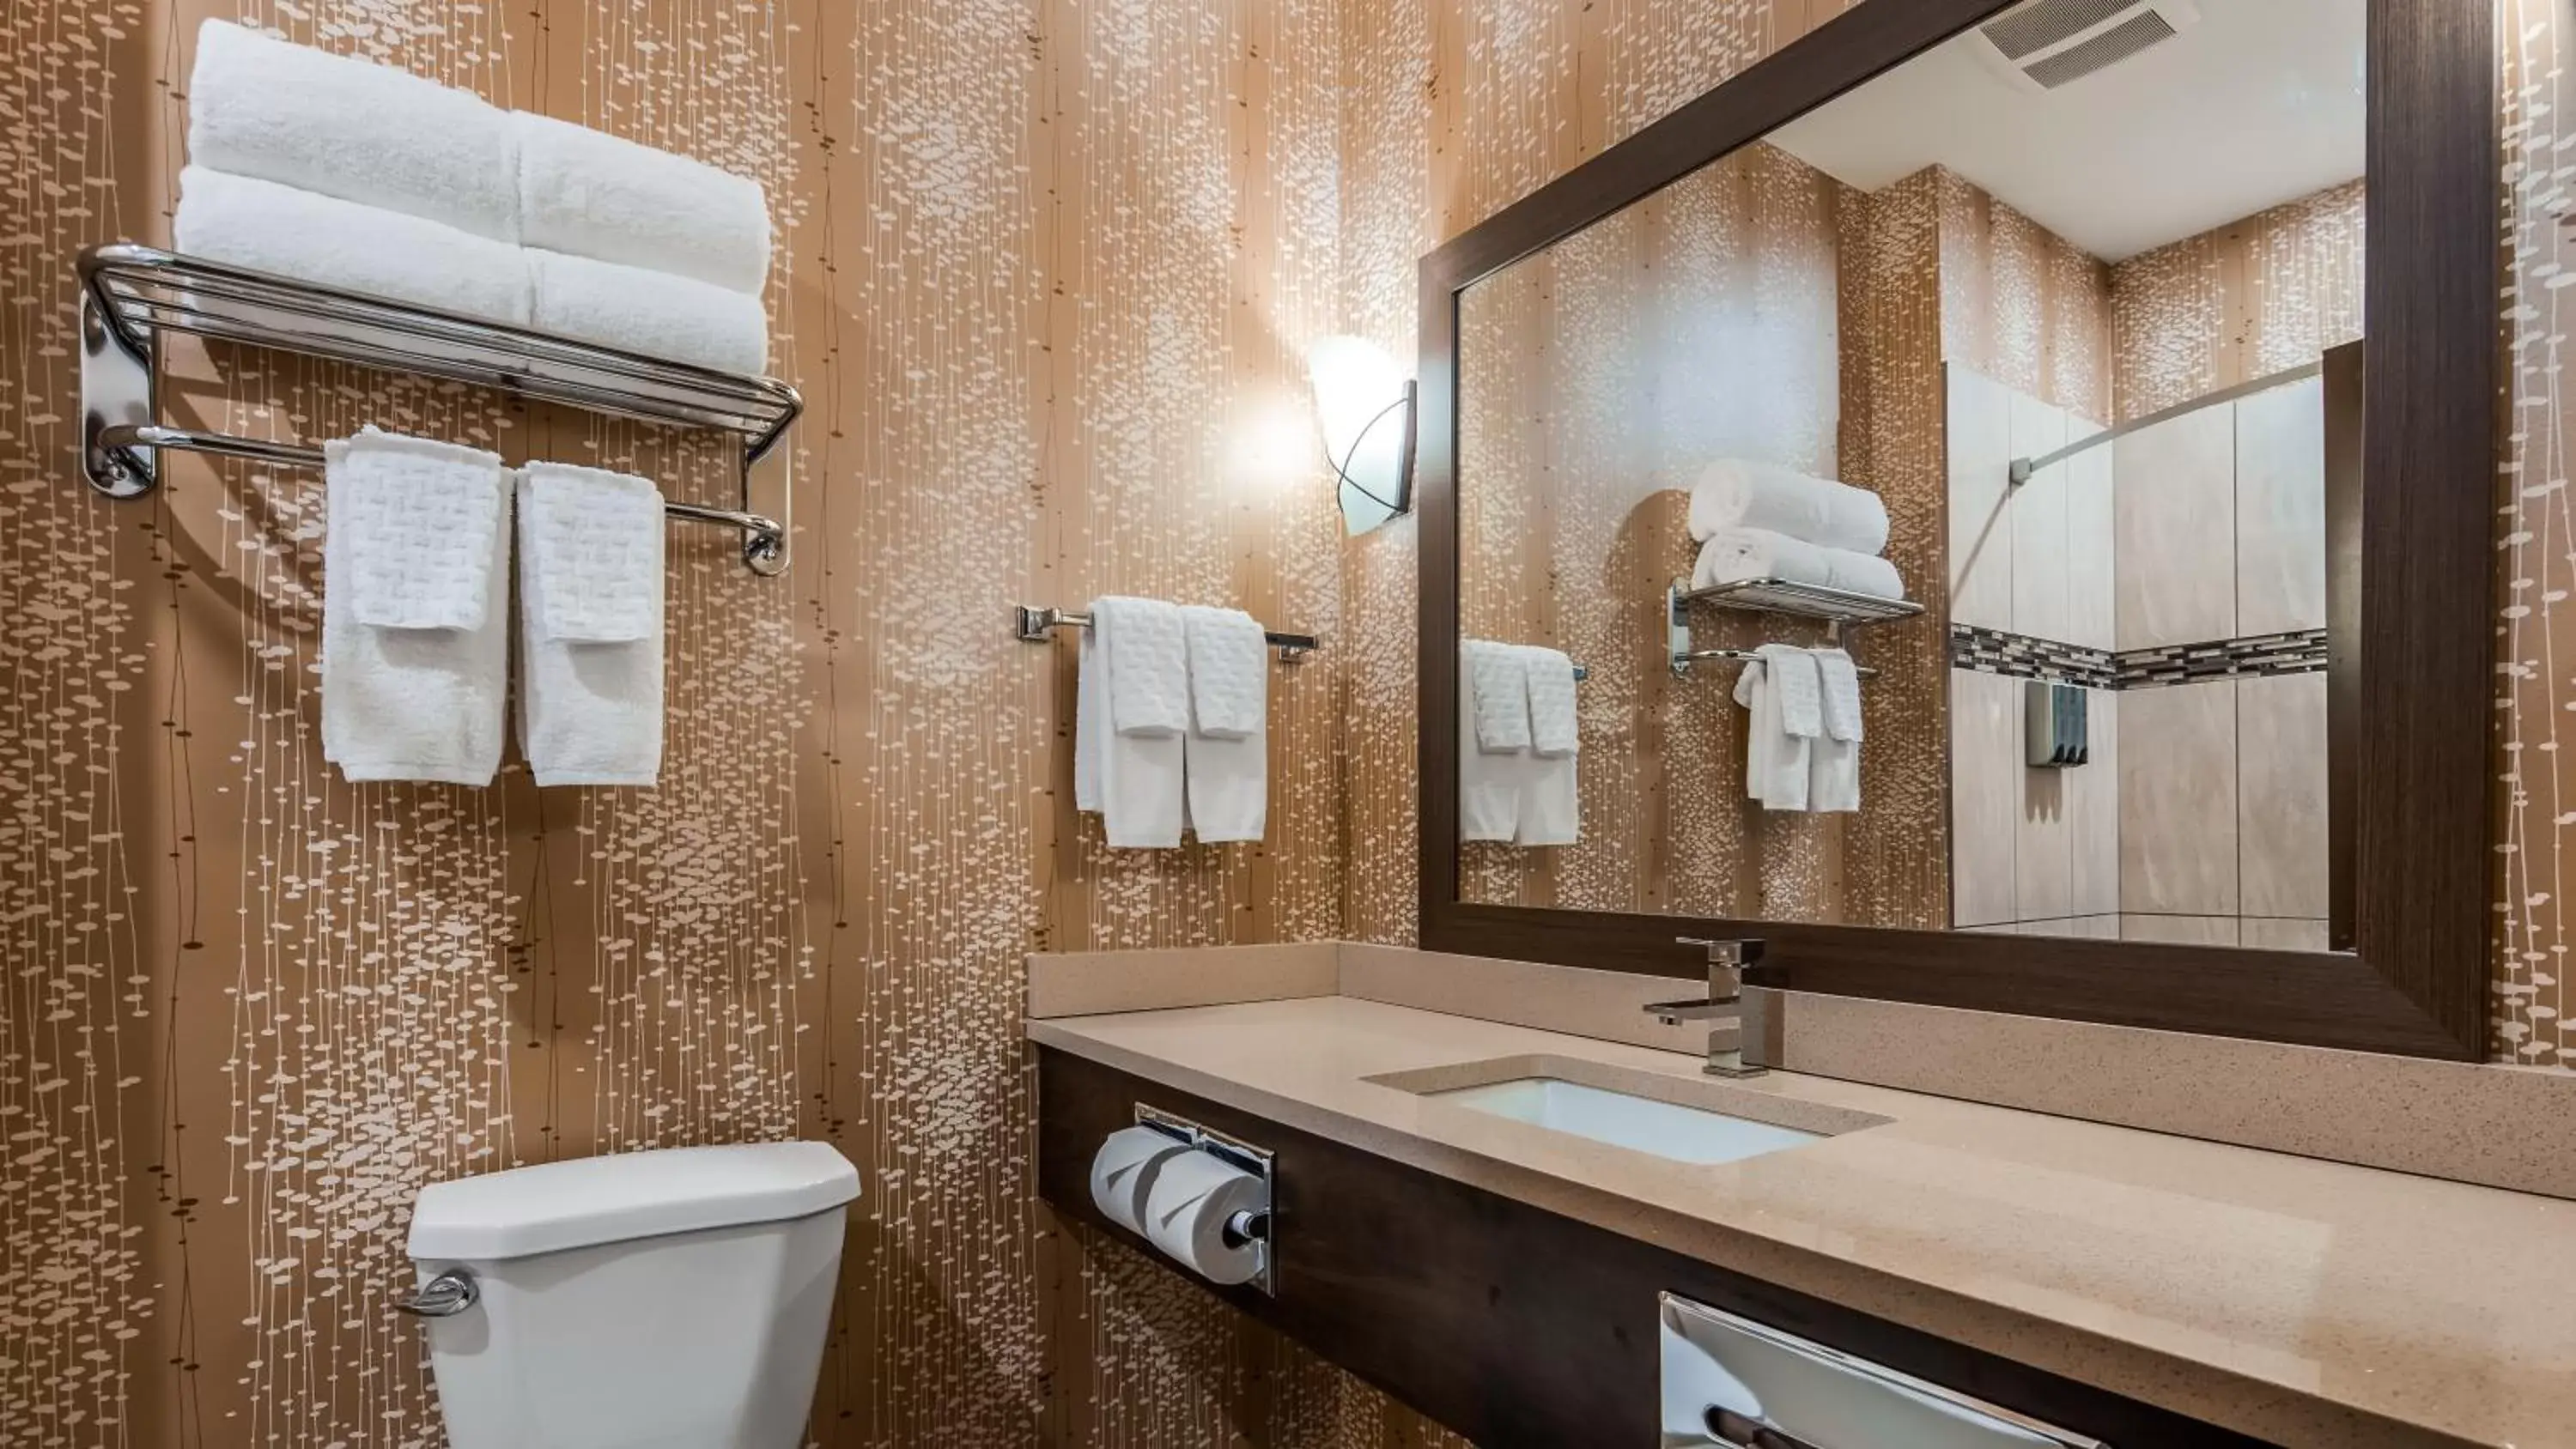 Toilet, Bathroom in Best Western Plus Kindersley Hotel